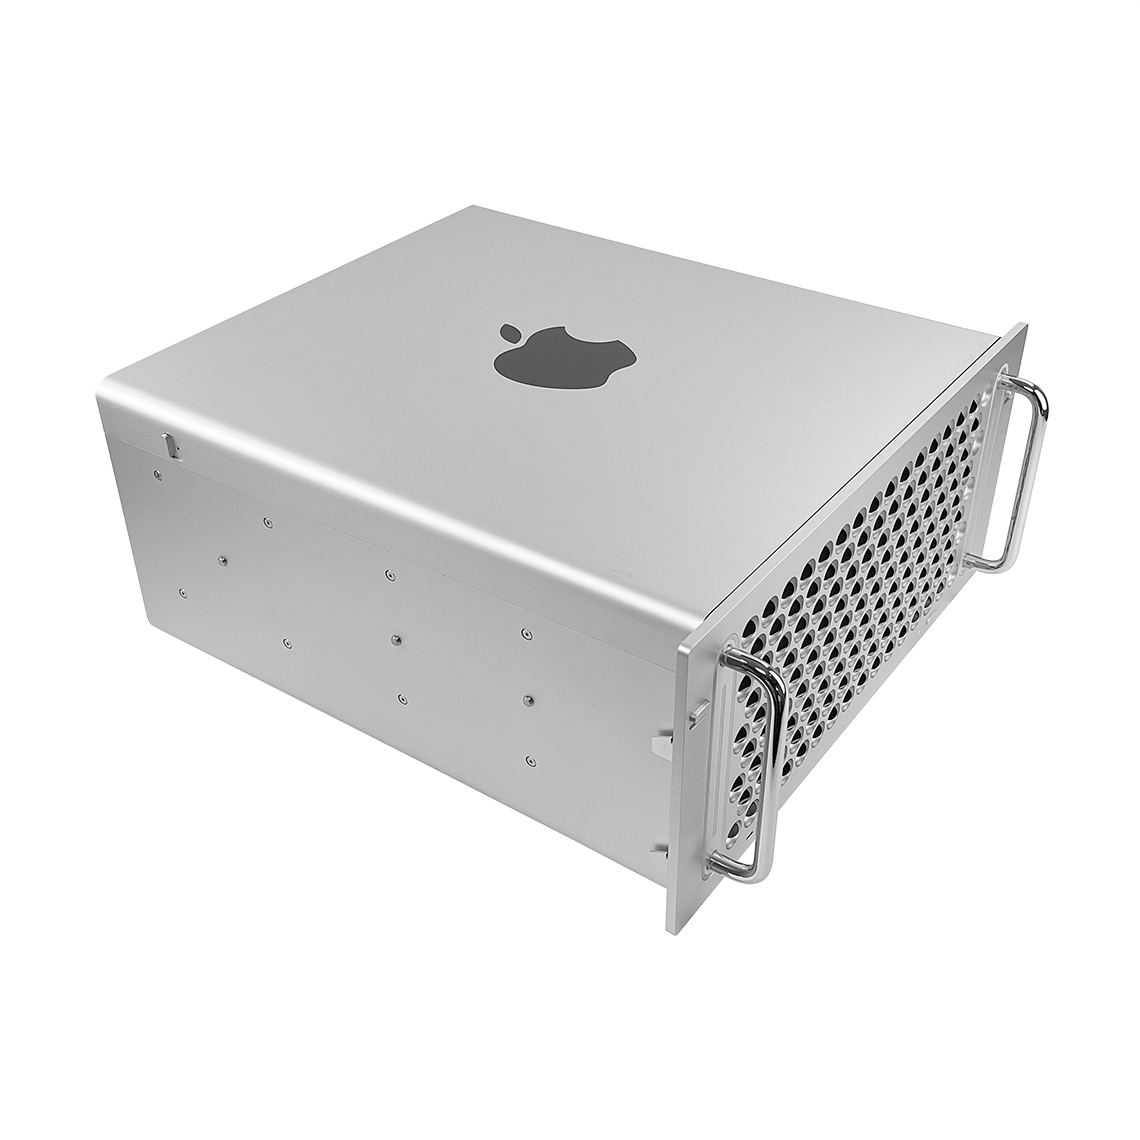 Apple 2019 Mac Pro - Intel Xeon 16-Core, 384GB RAM, 1TB Flash, AMD Radeon Pro Vega II 32GB, Rack Mount, Grade A